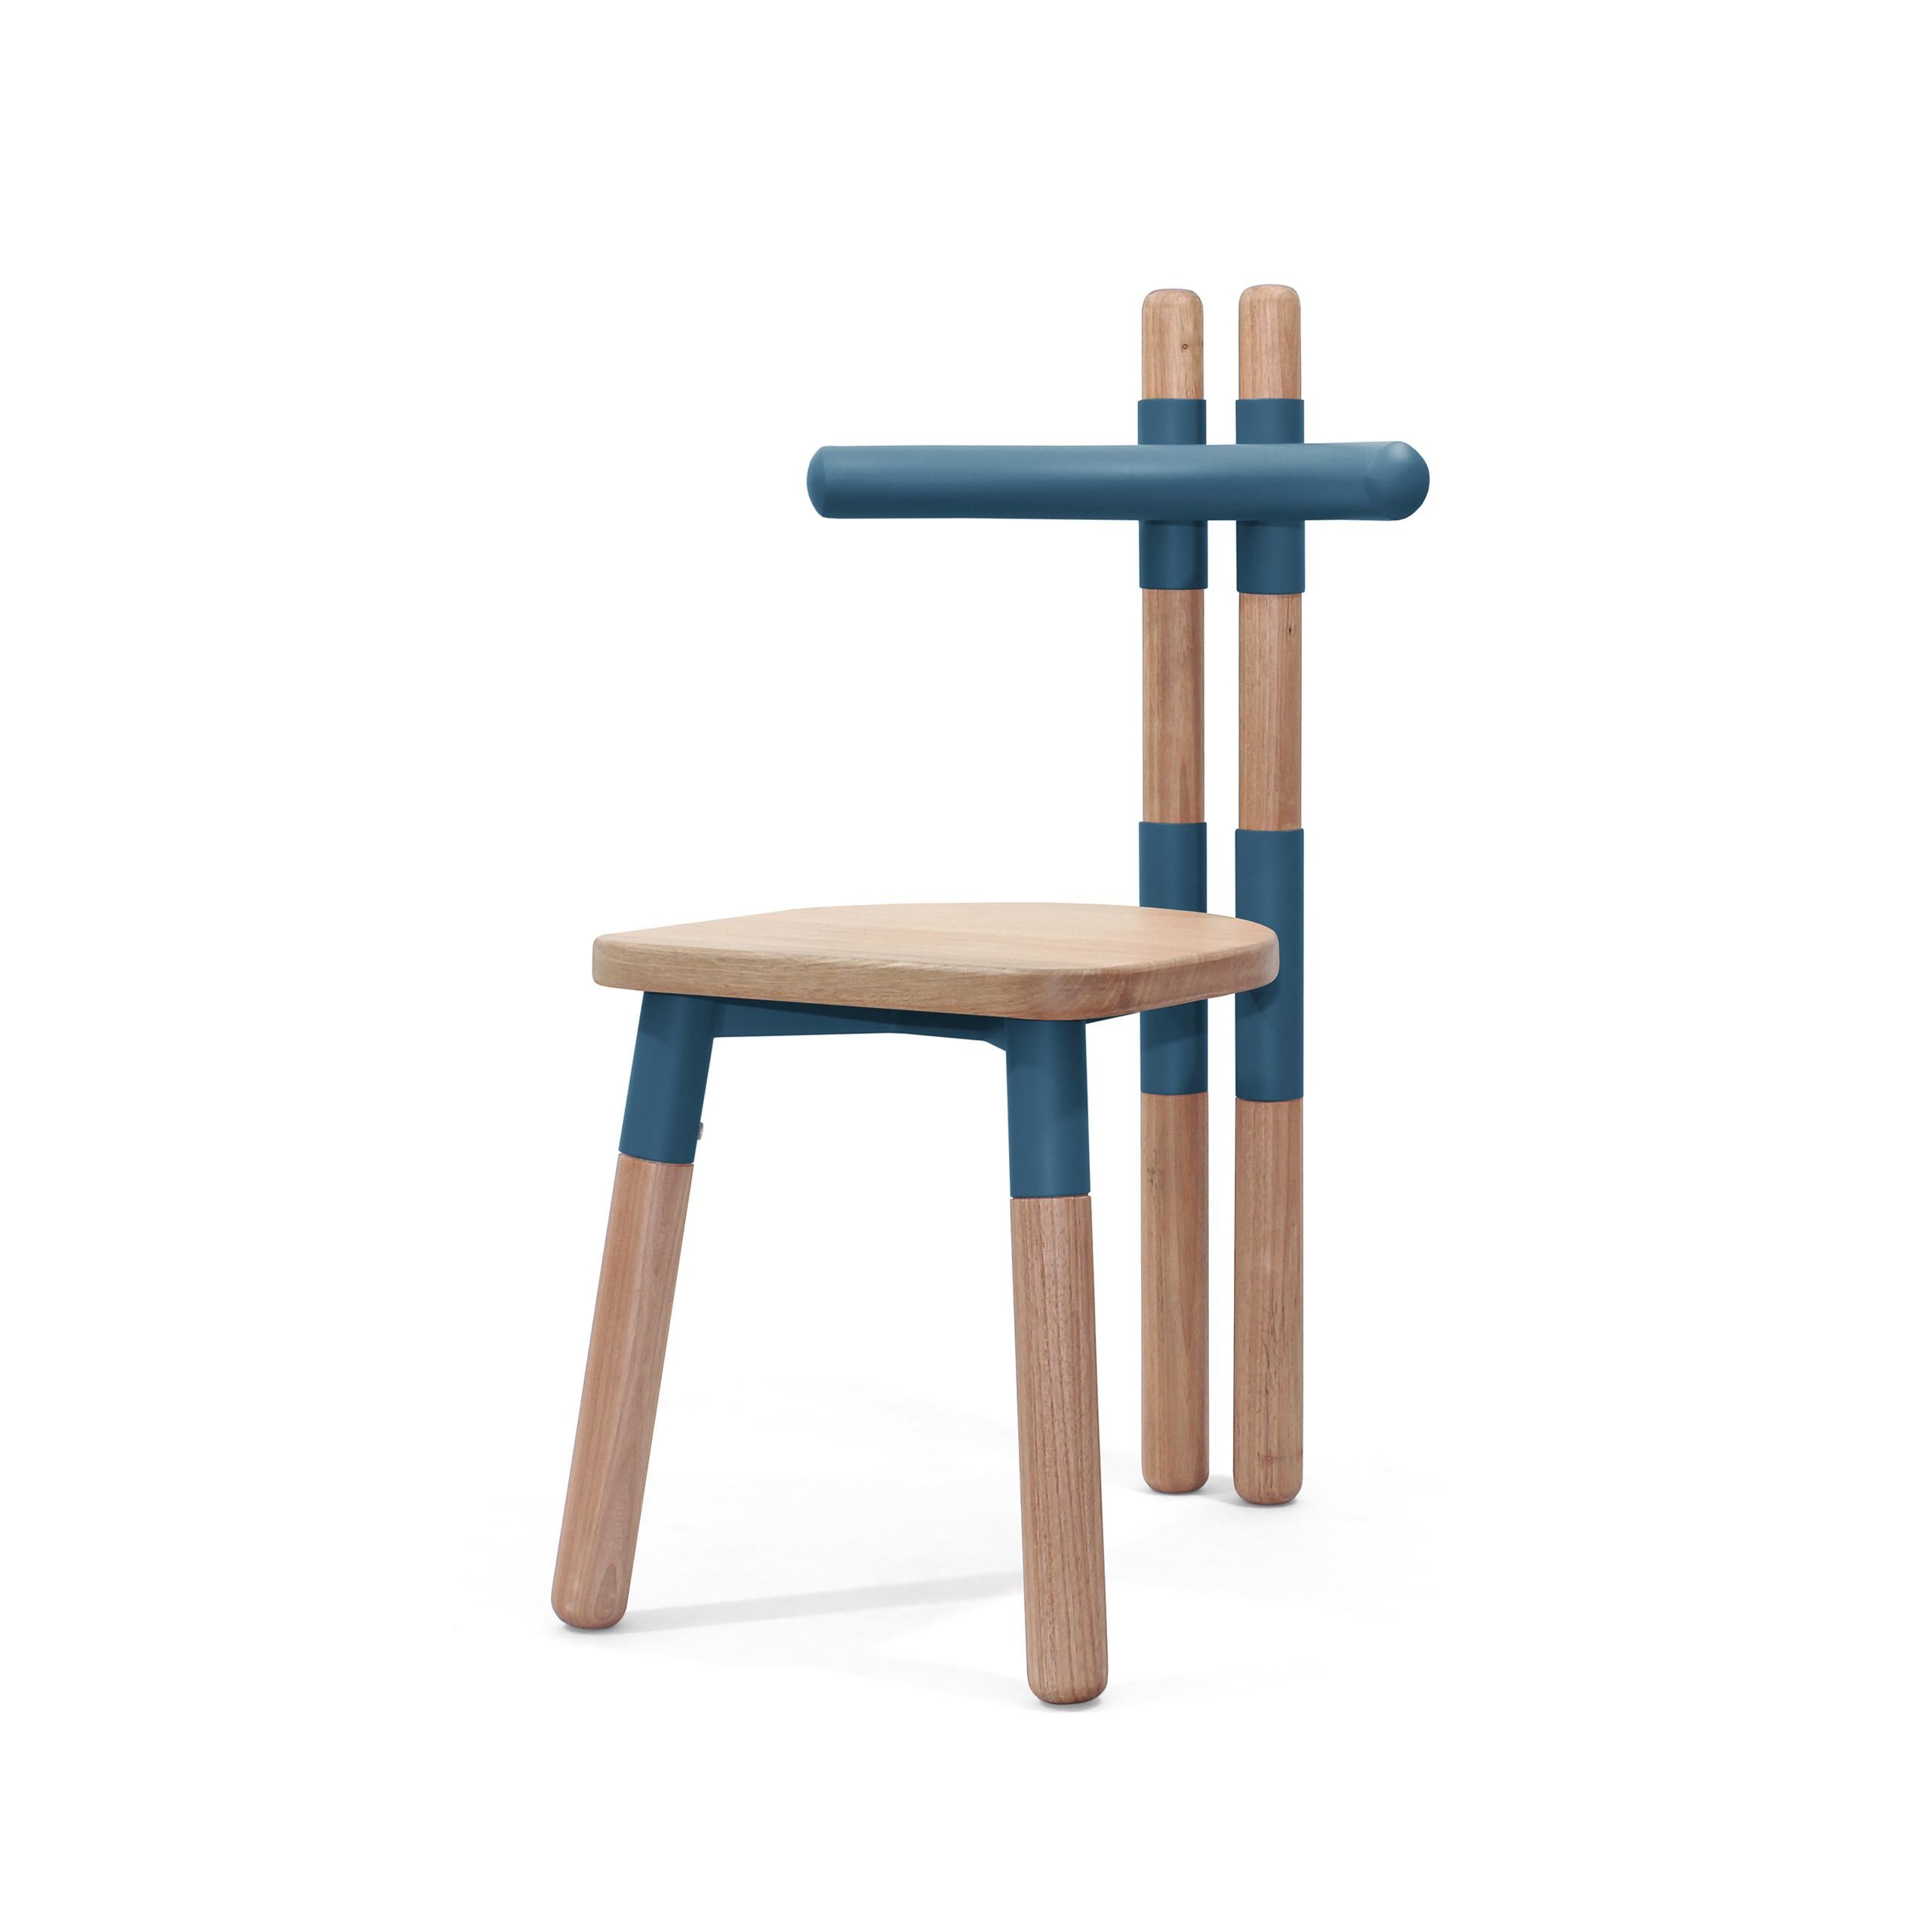 La chaise PK12 s'inspire des fermes en bois utilisées dans la construction des toits.
Les douilles de chaise font référence à la 